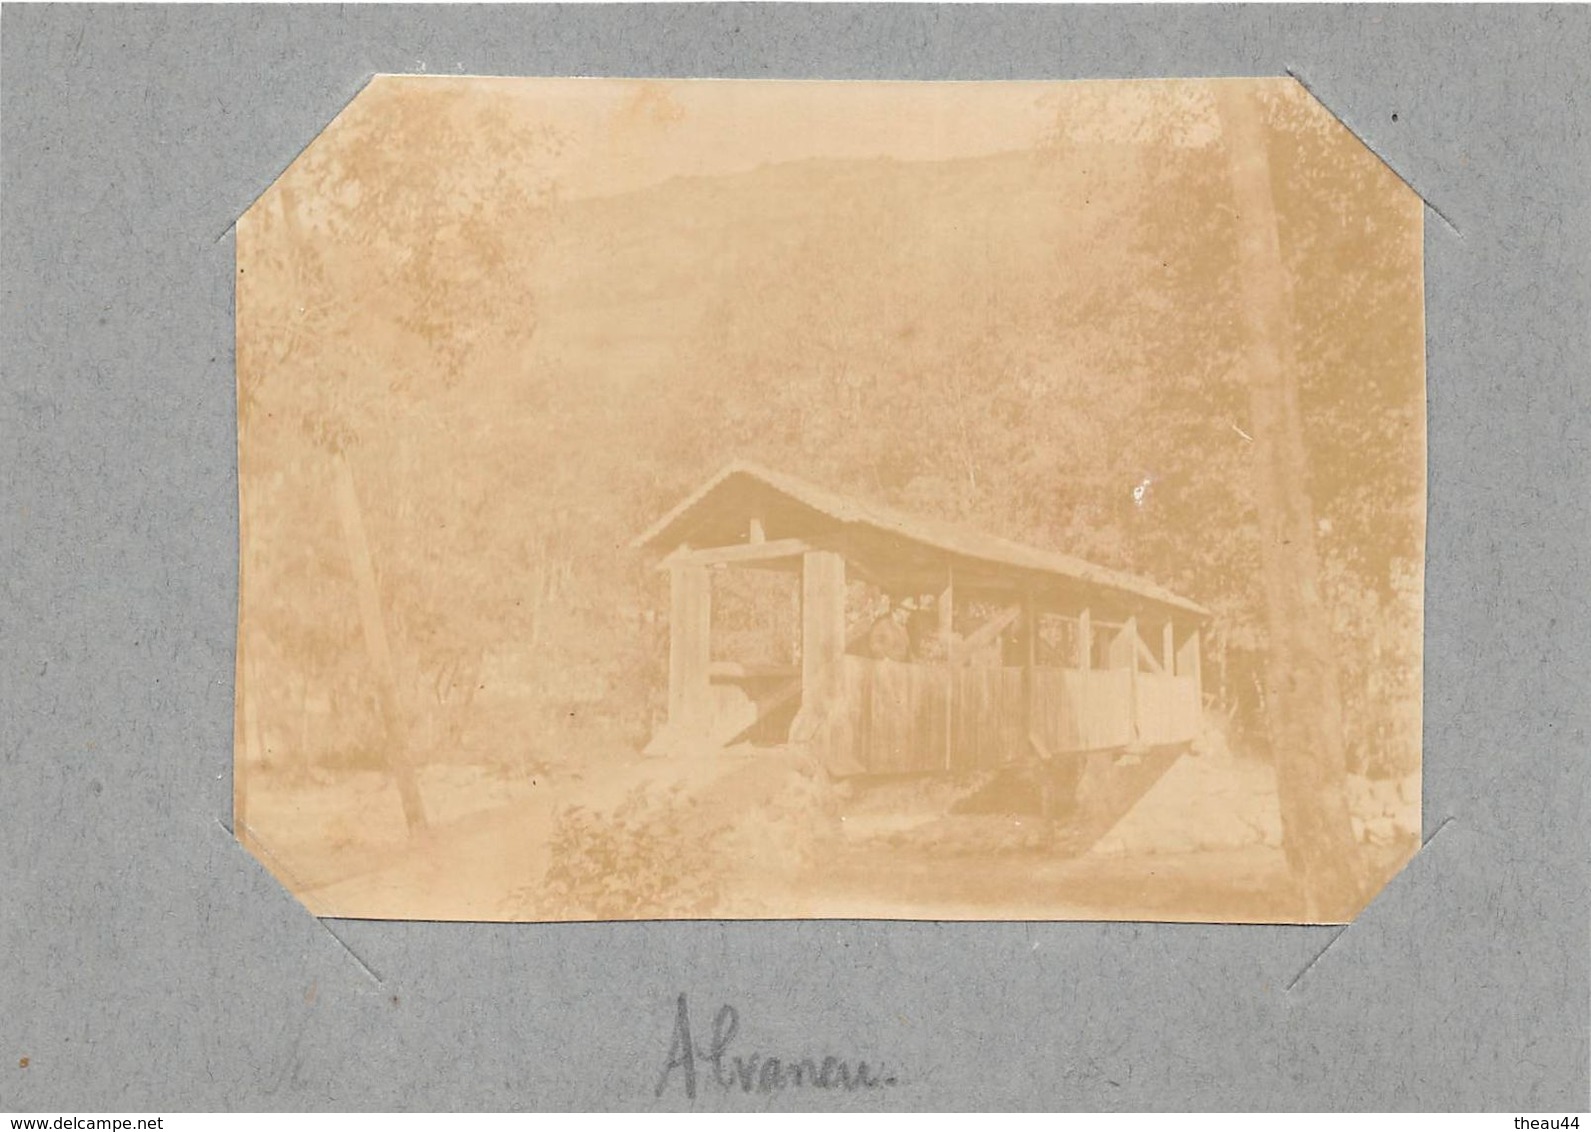 SUISSE  -  Cliché Albuminé En 1904  -  ALVANEU  -  Pont Couvert   -  Voir Description - Alvaneu